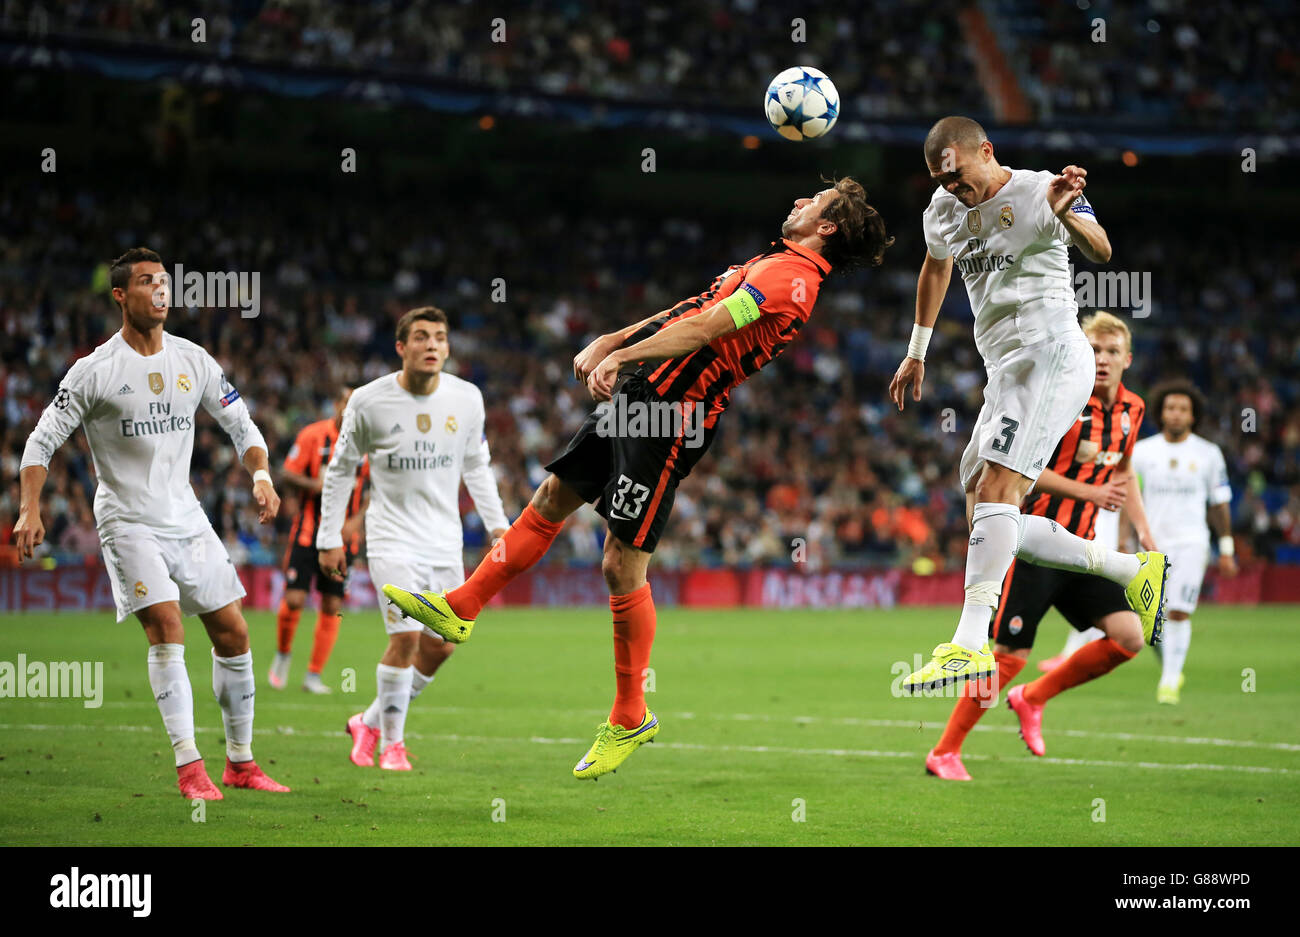 Le Pepe du Real Madrid remporte le titre en battant le Darijo Srna de Shakhtar Donestsk Banque D'Images